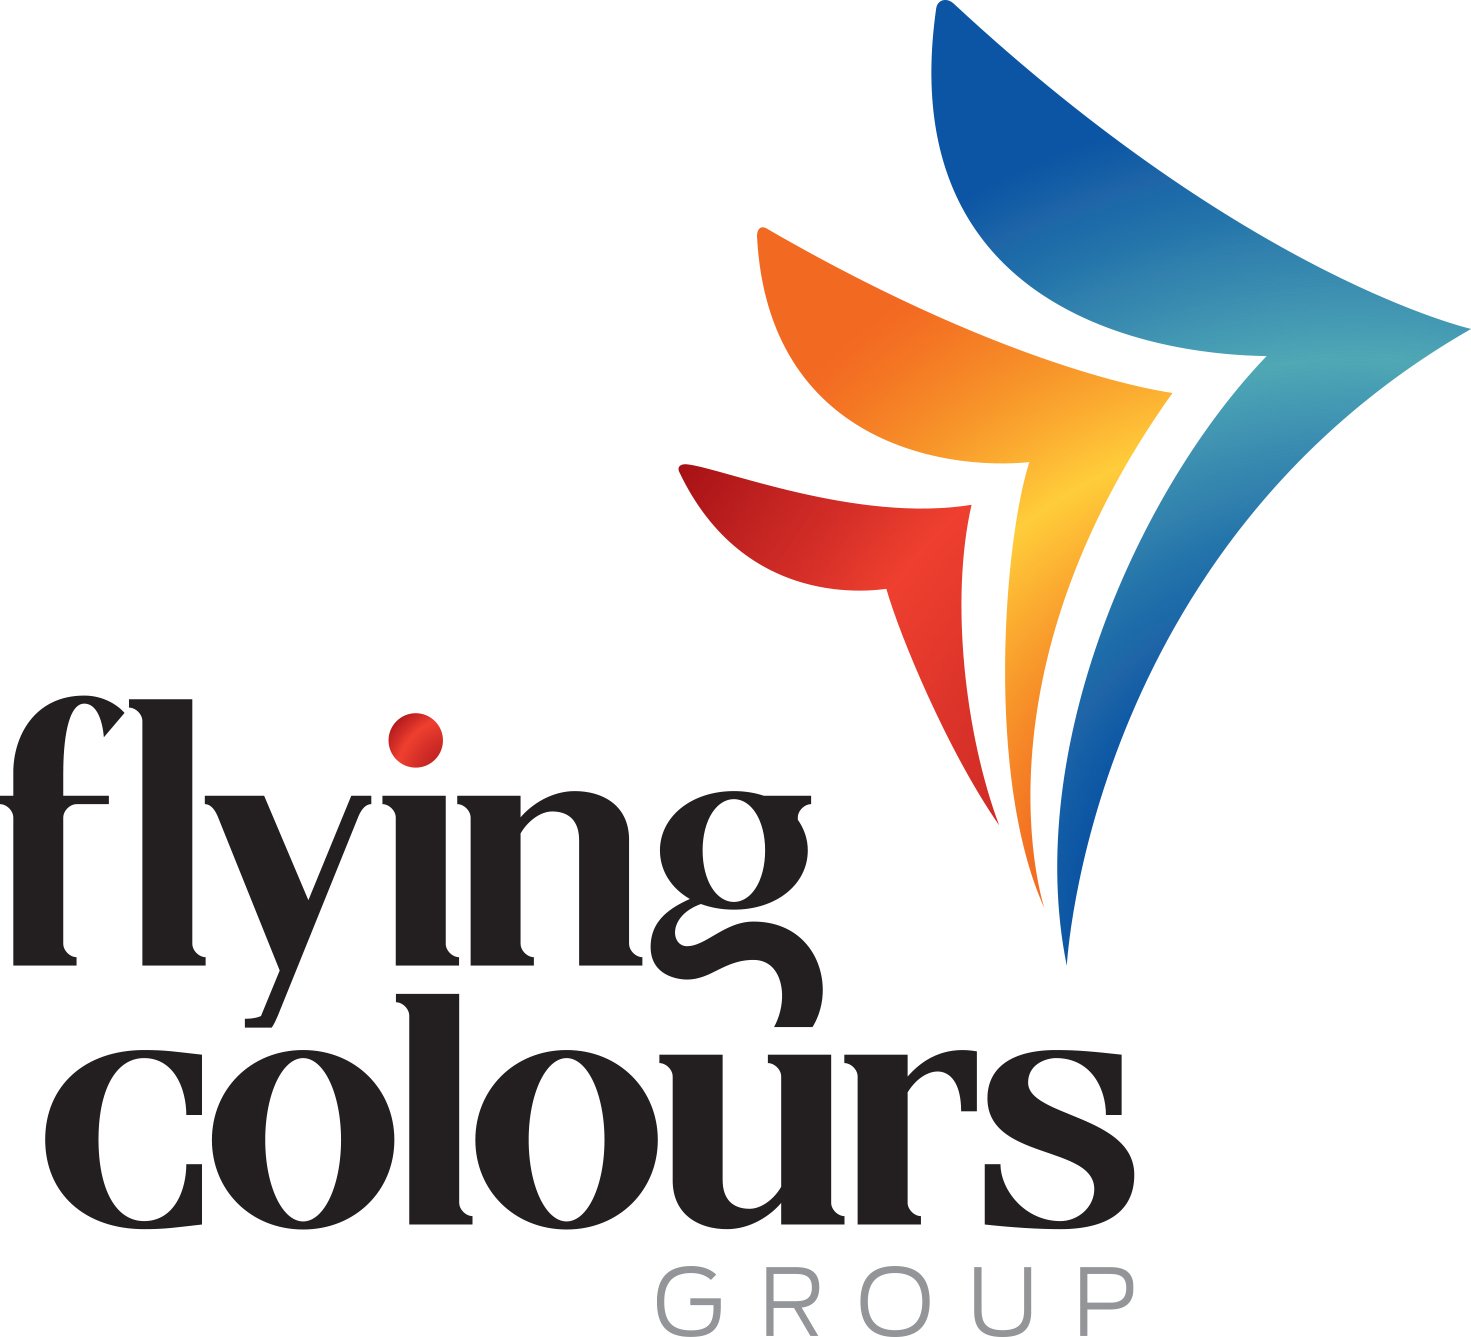 Flying Colours Group Logo.jpg